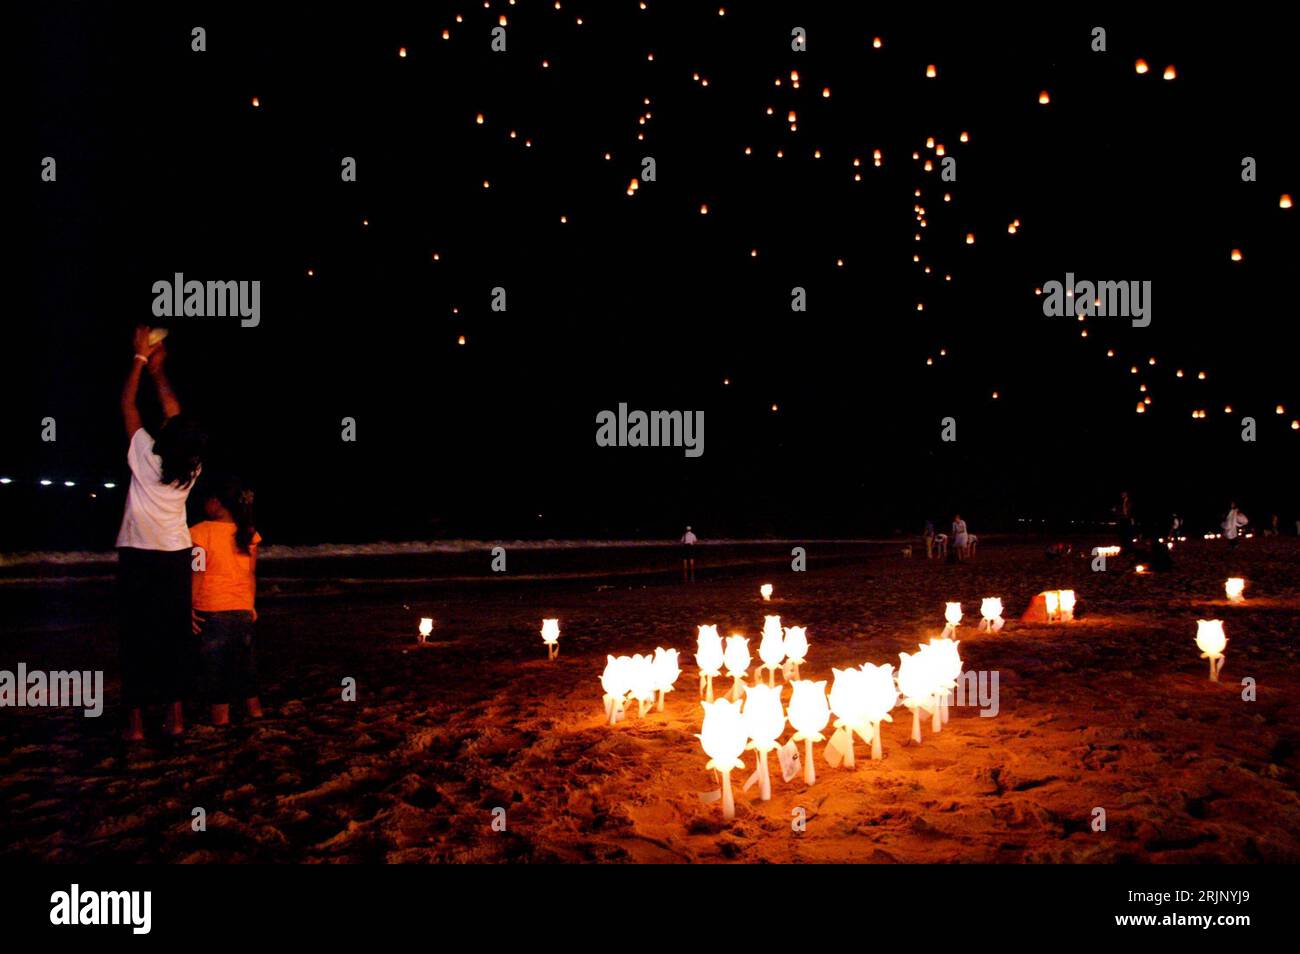 Bildnummer : 51038480 Datum : 26.12.2005 Copyright : imago/Xinhua Angehörige gedenken mit brennenden Kerzen und freischwebenen Laternen der Opfer der tsunami-Katastrophe vor eine Jahr am Strand von Khao Lak BEI Nacht - Provinz Phangnga - PUBLICATIONxNOTxINxCHN, Personen, Landufnahschaft, Resthlichme, 2005 PhangNga, Phang Nga, tsunami-Katastrophe, Trauerzeremonie, Gedenkfeier, Gedenken, Erinnerung, Erster, 1. Jahrestag, Anteilnahme, Trauernde, nachts, Nacht, Kerze, Kerzen, brennen, brennt, brennend, Laterne, Laternen, Angehörige, Angehöriger, Familienangehörige, Familienangehöriger ; , quer, Ko Banque D'Images